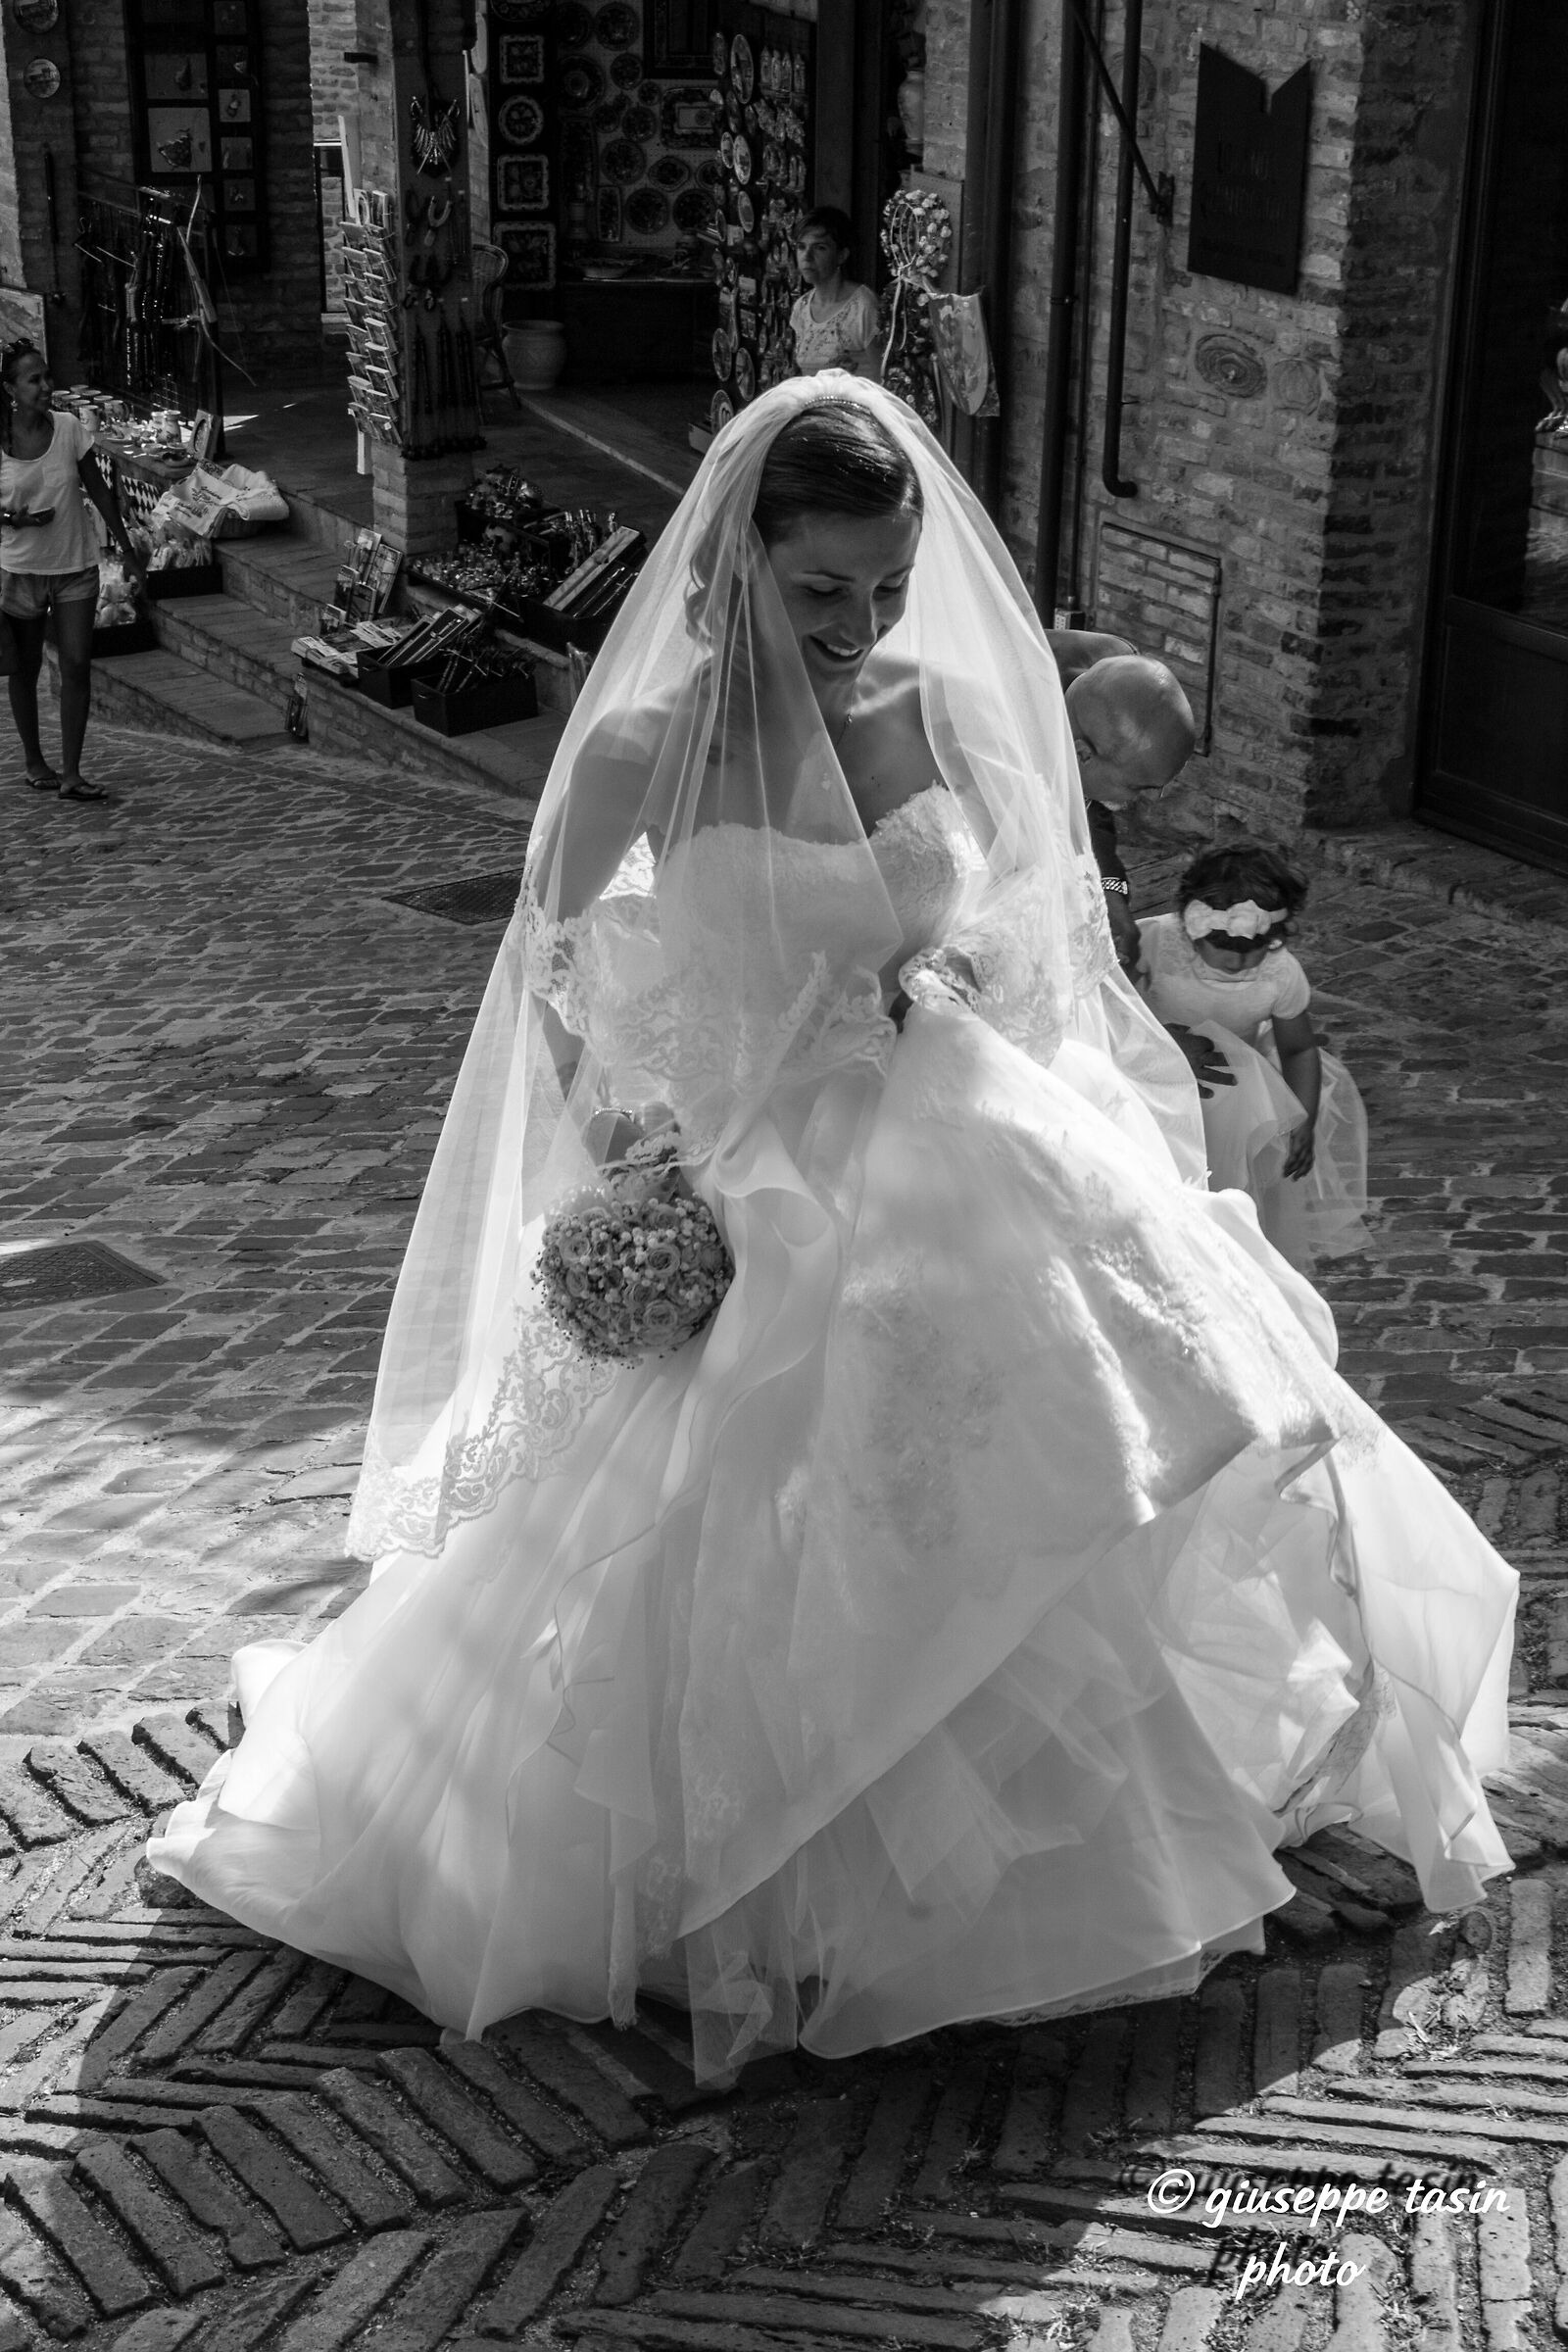 the bride...